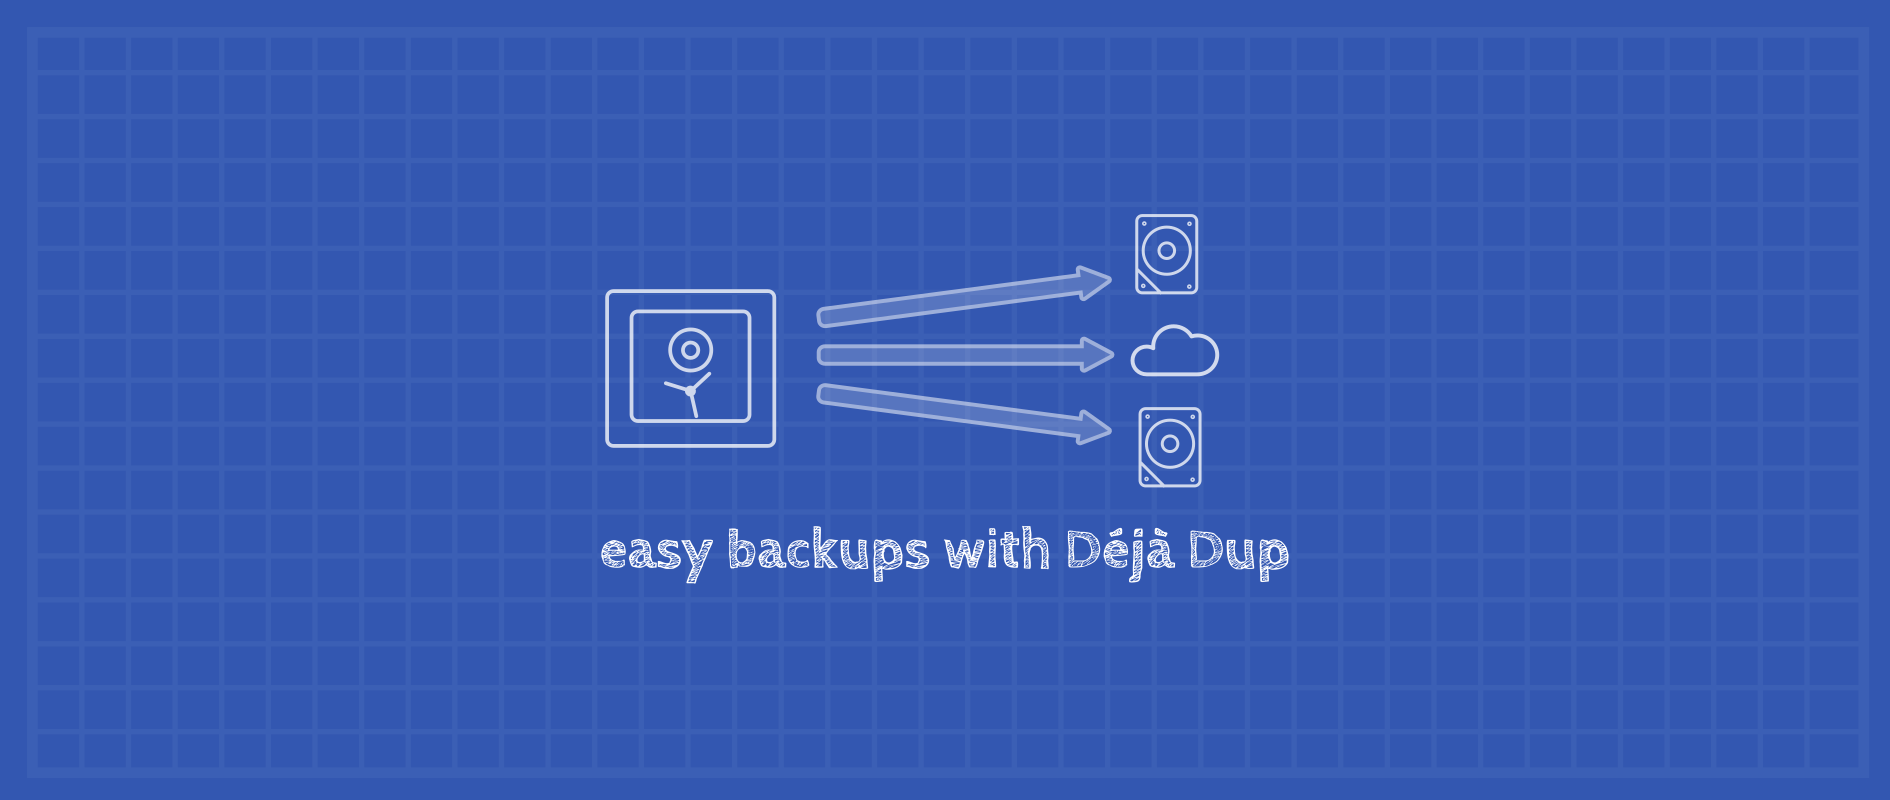 Easy backups with Déjà Dup